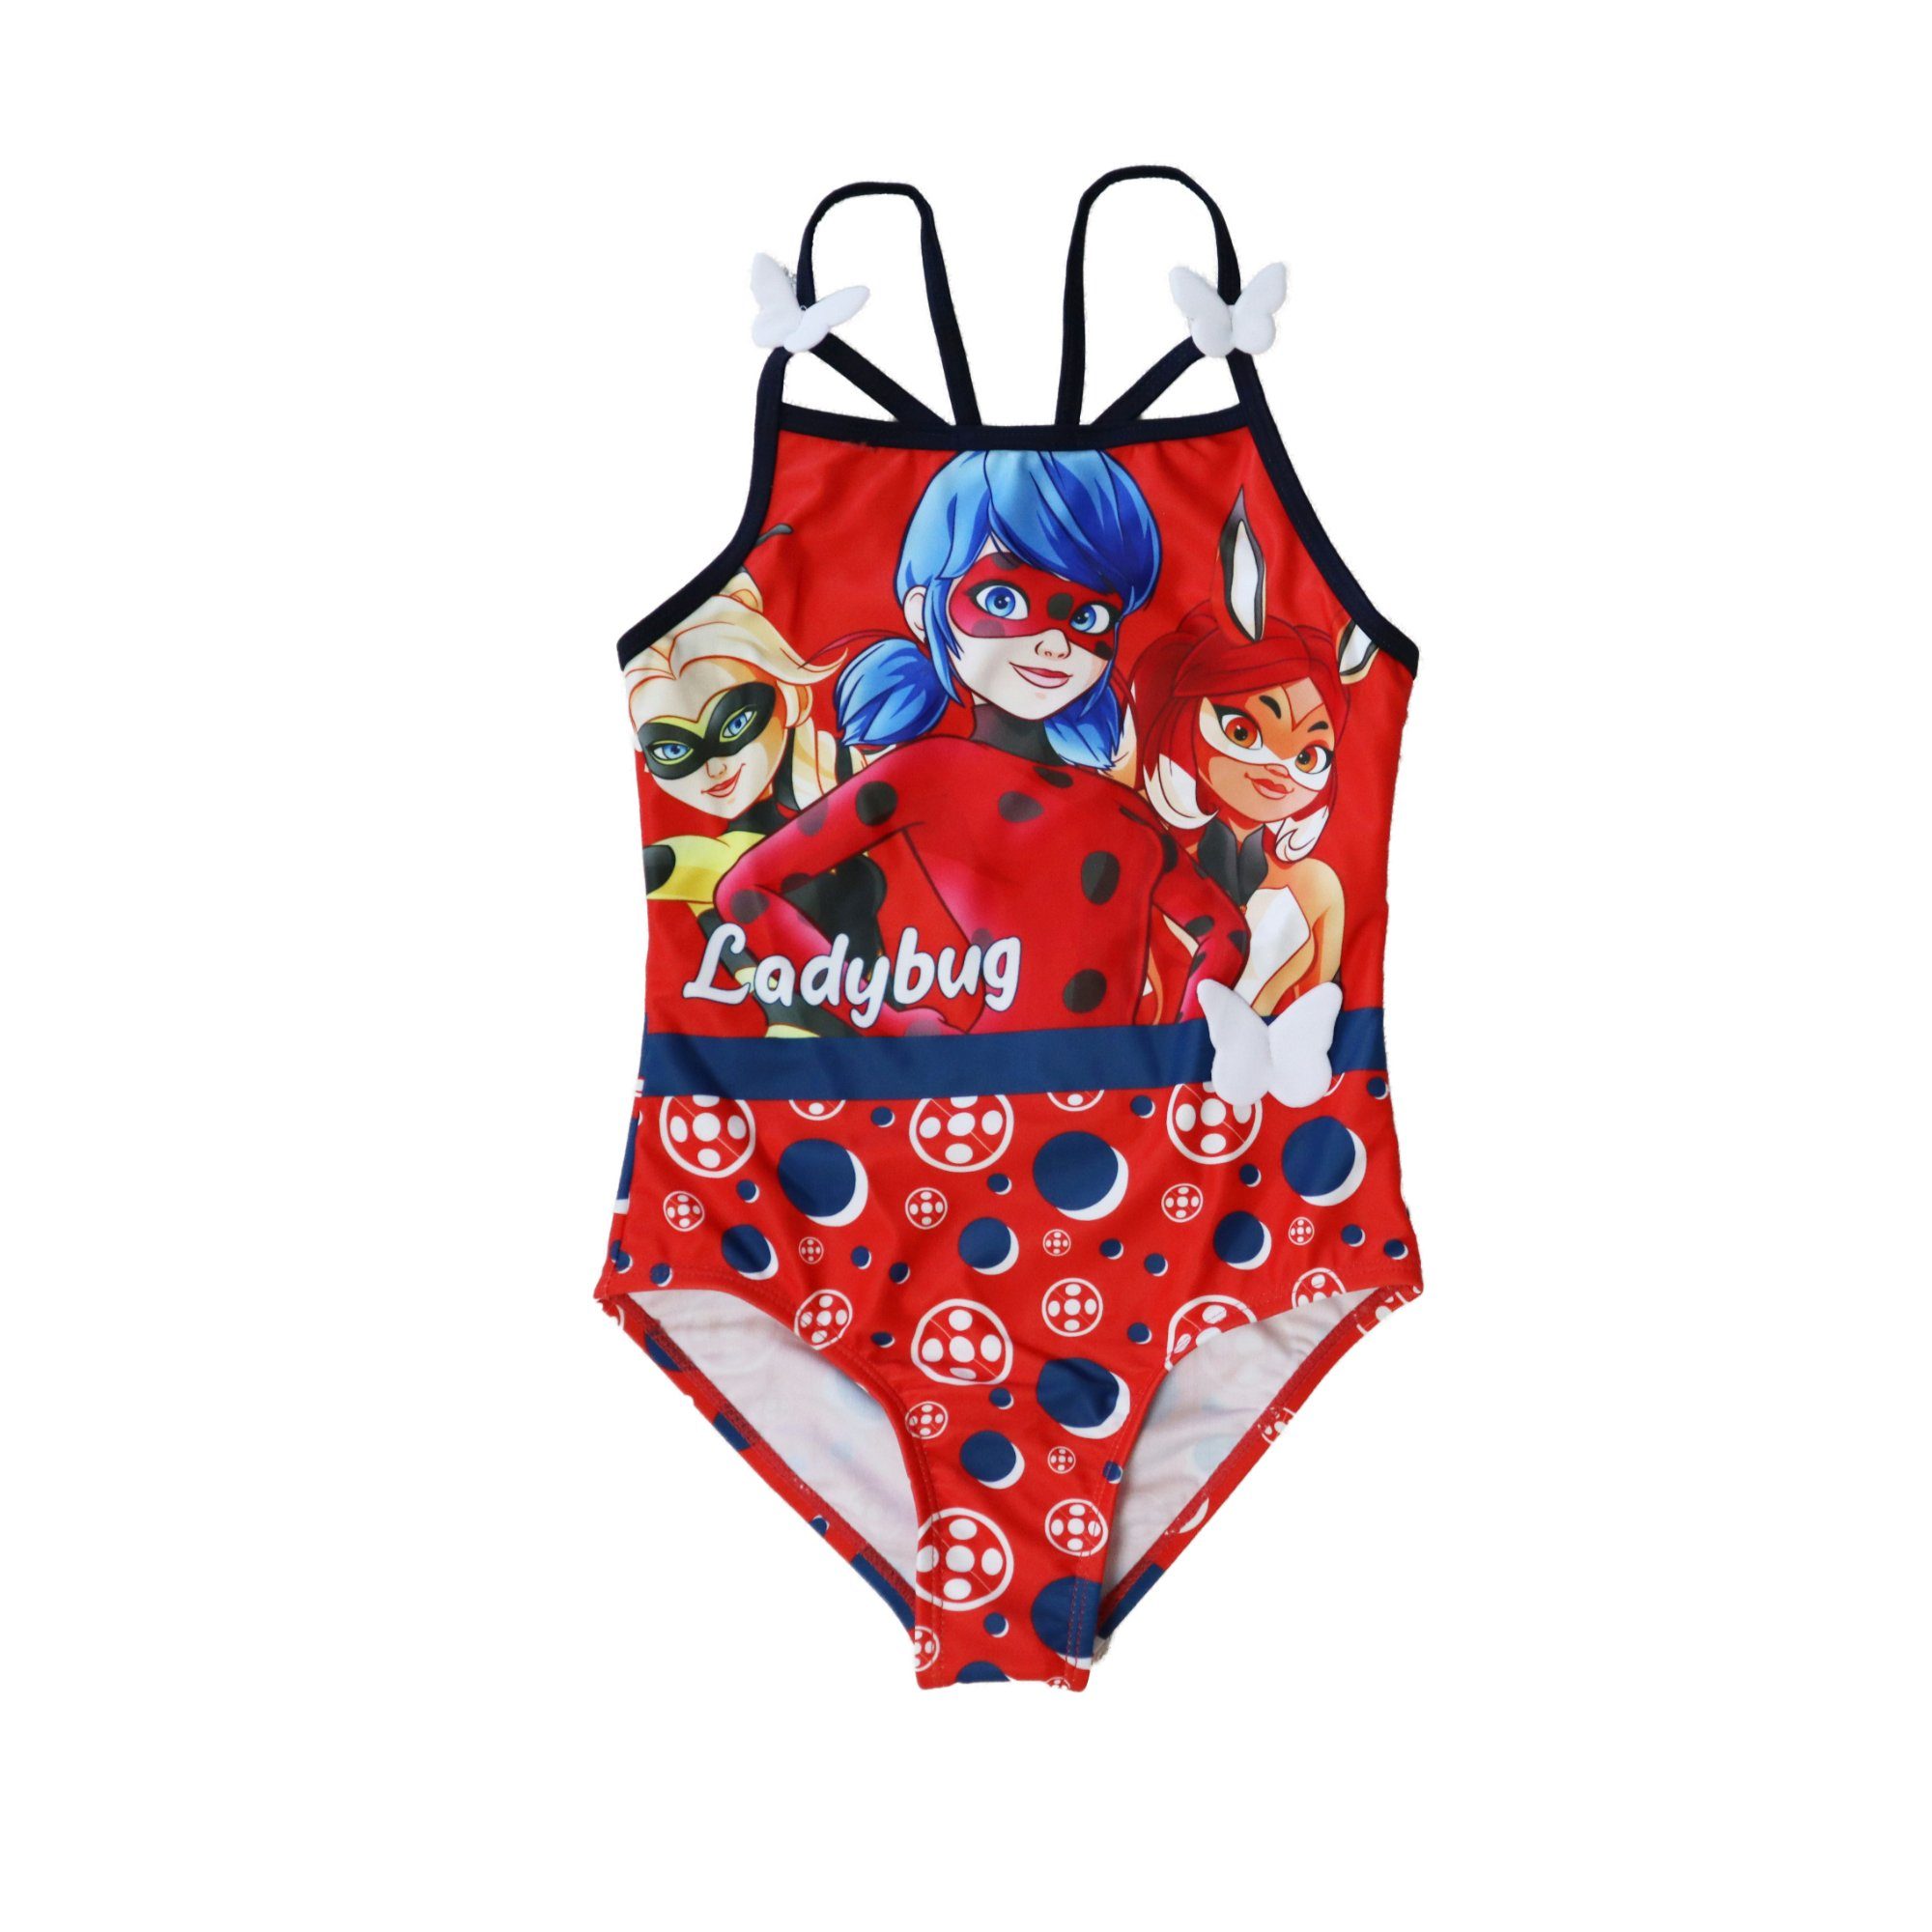 Miraculous - Ladybug Badeanzug Ladybug, Rena Rouge, Queen Bee Kinder Bademode Mädchen Schwimmanzug Gr. 104 bis 128, Rot oder Schwarz